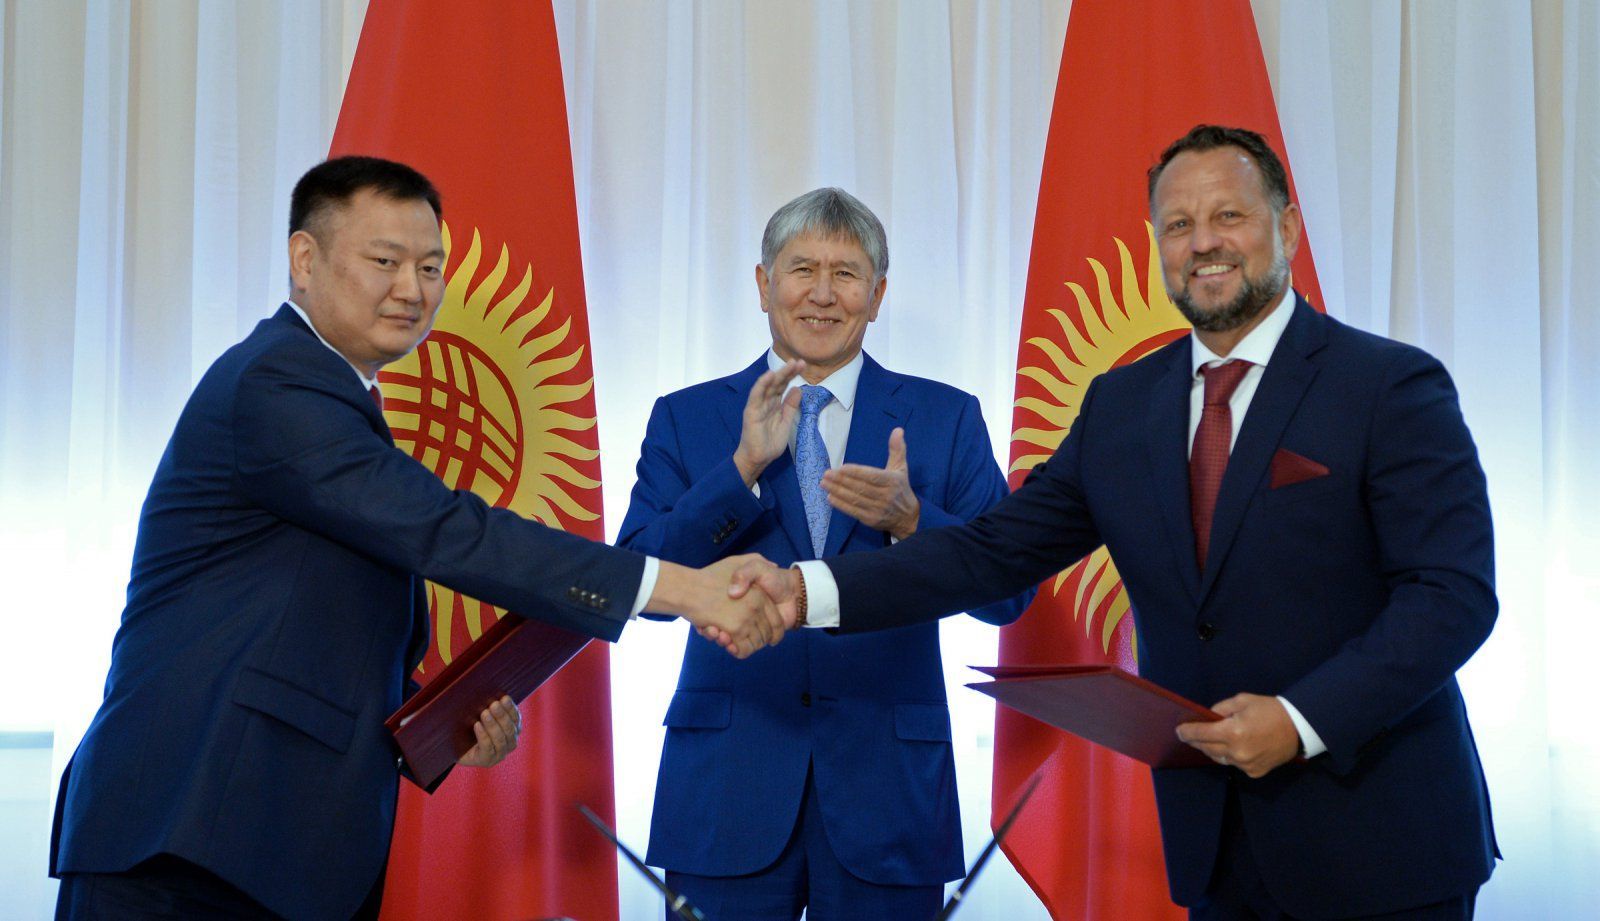 Michael Smelík si podává ruku se zástupcem kyrgyzské vlády. Tleská jim prezident Almazbek Atambajev.